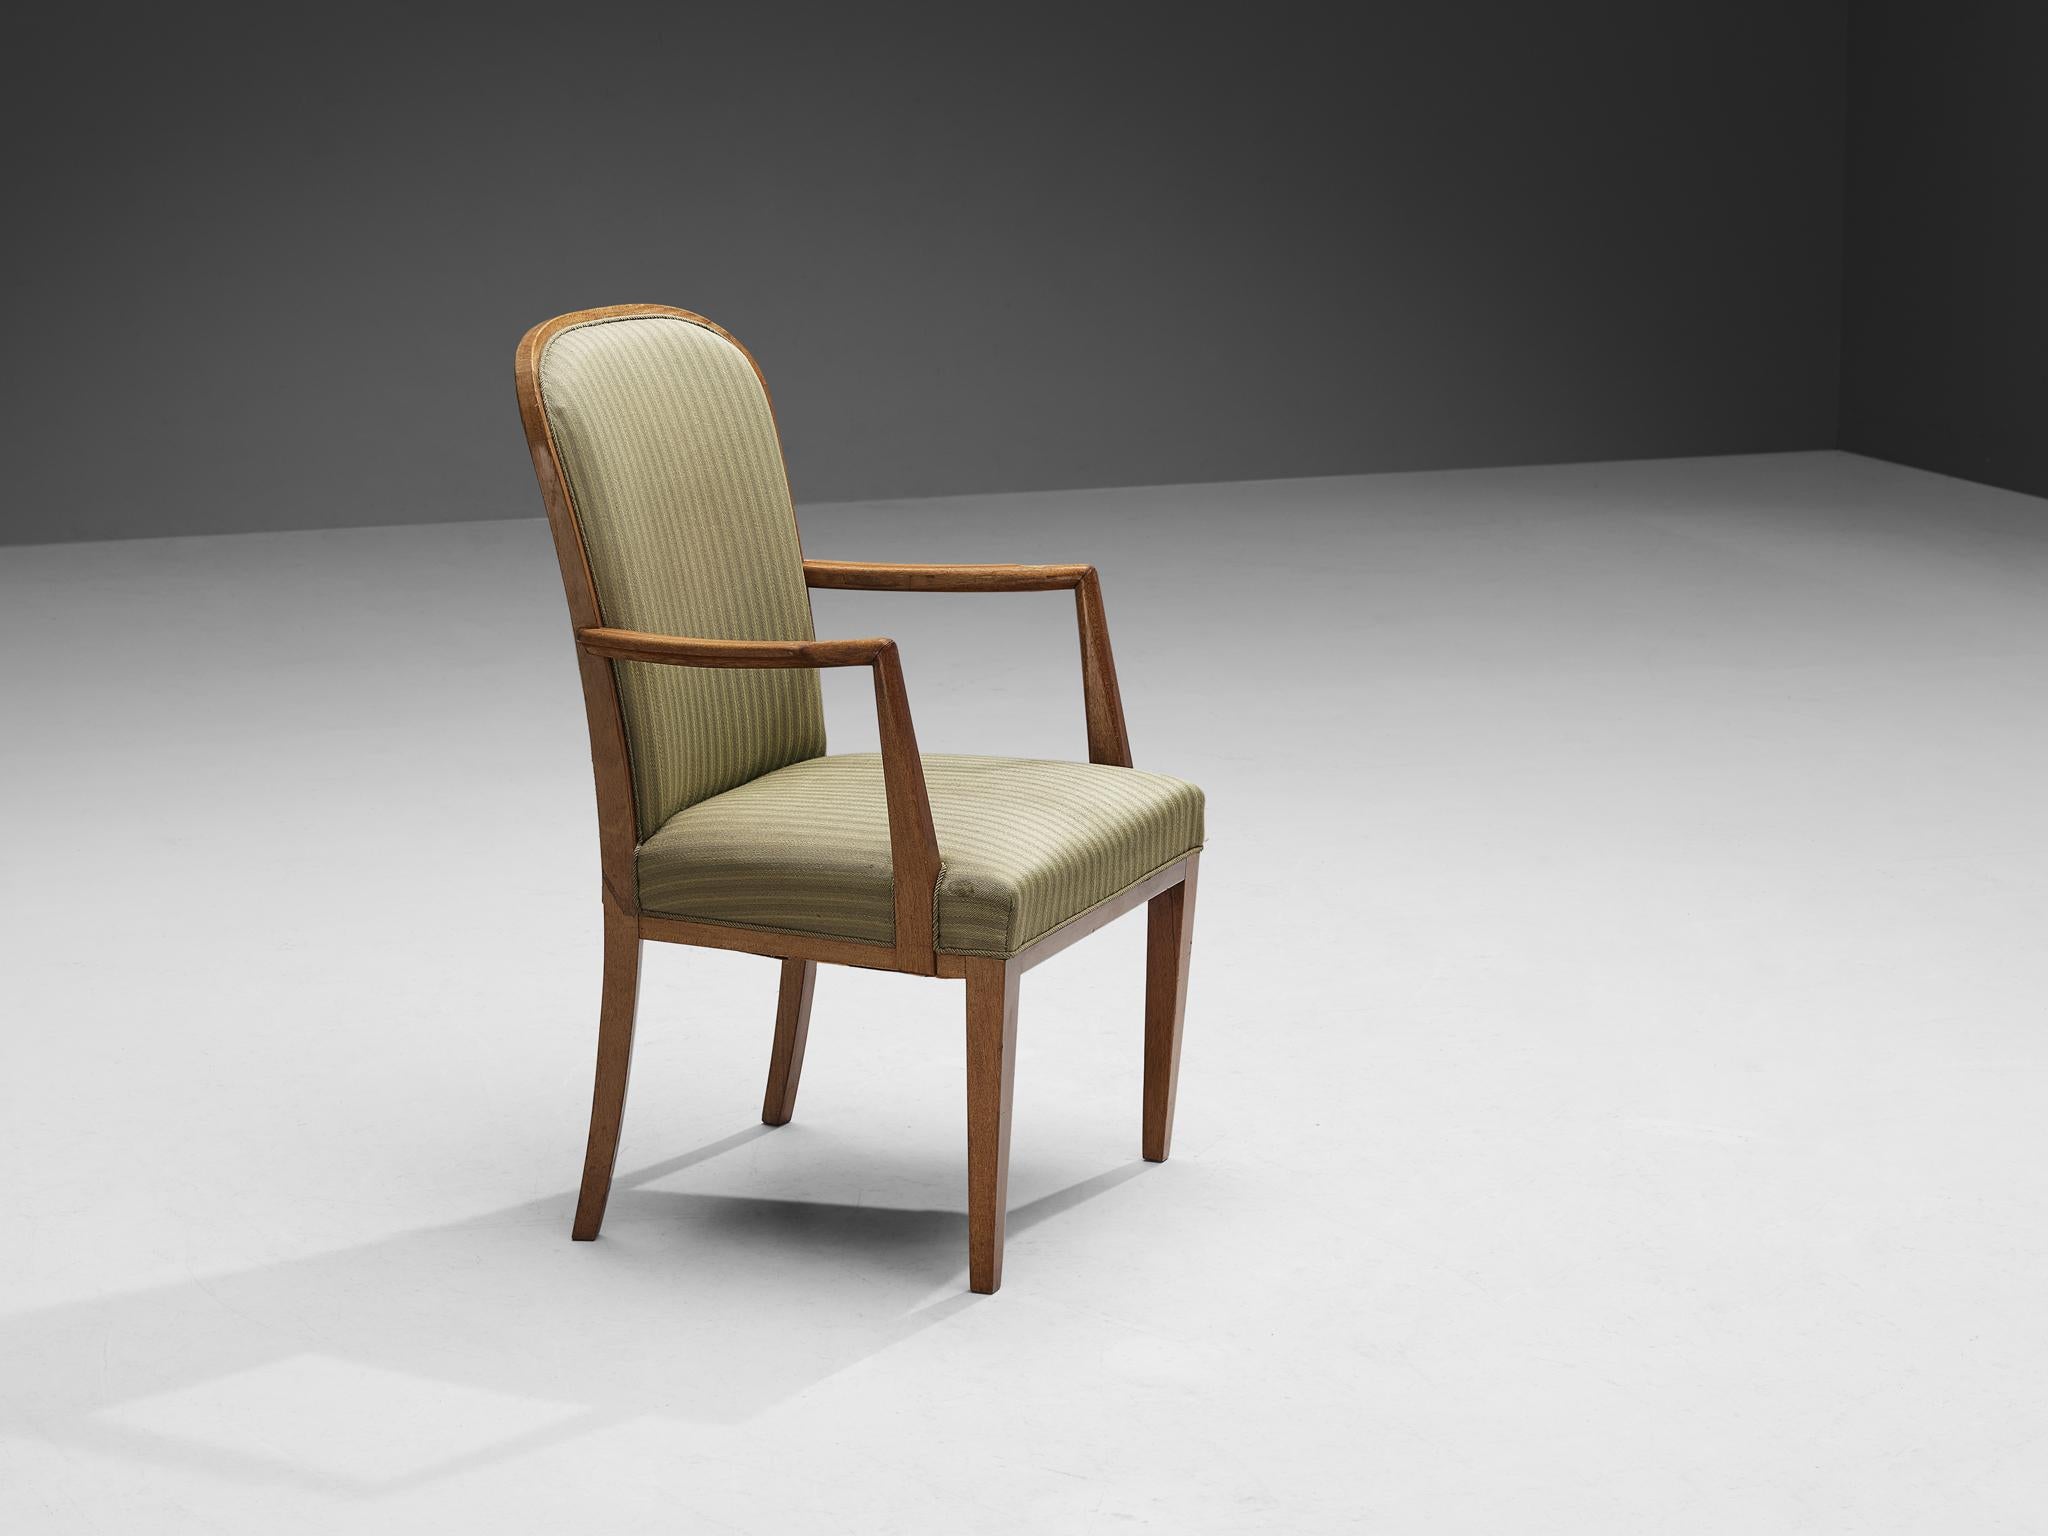 Stuhl mit hoher Rückenlehne, Eiche, Stoff, Skandinavien, 1950er Jahre.

Dieser Stuhl mit hoher Rückenlehne erinnert stark an die Formensprache des schwedischen Designers Carl Malmsten. Die einzigartigen Linien und Kurven des Designs sind auffallend